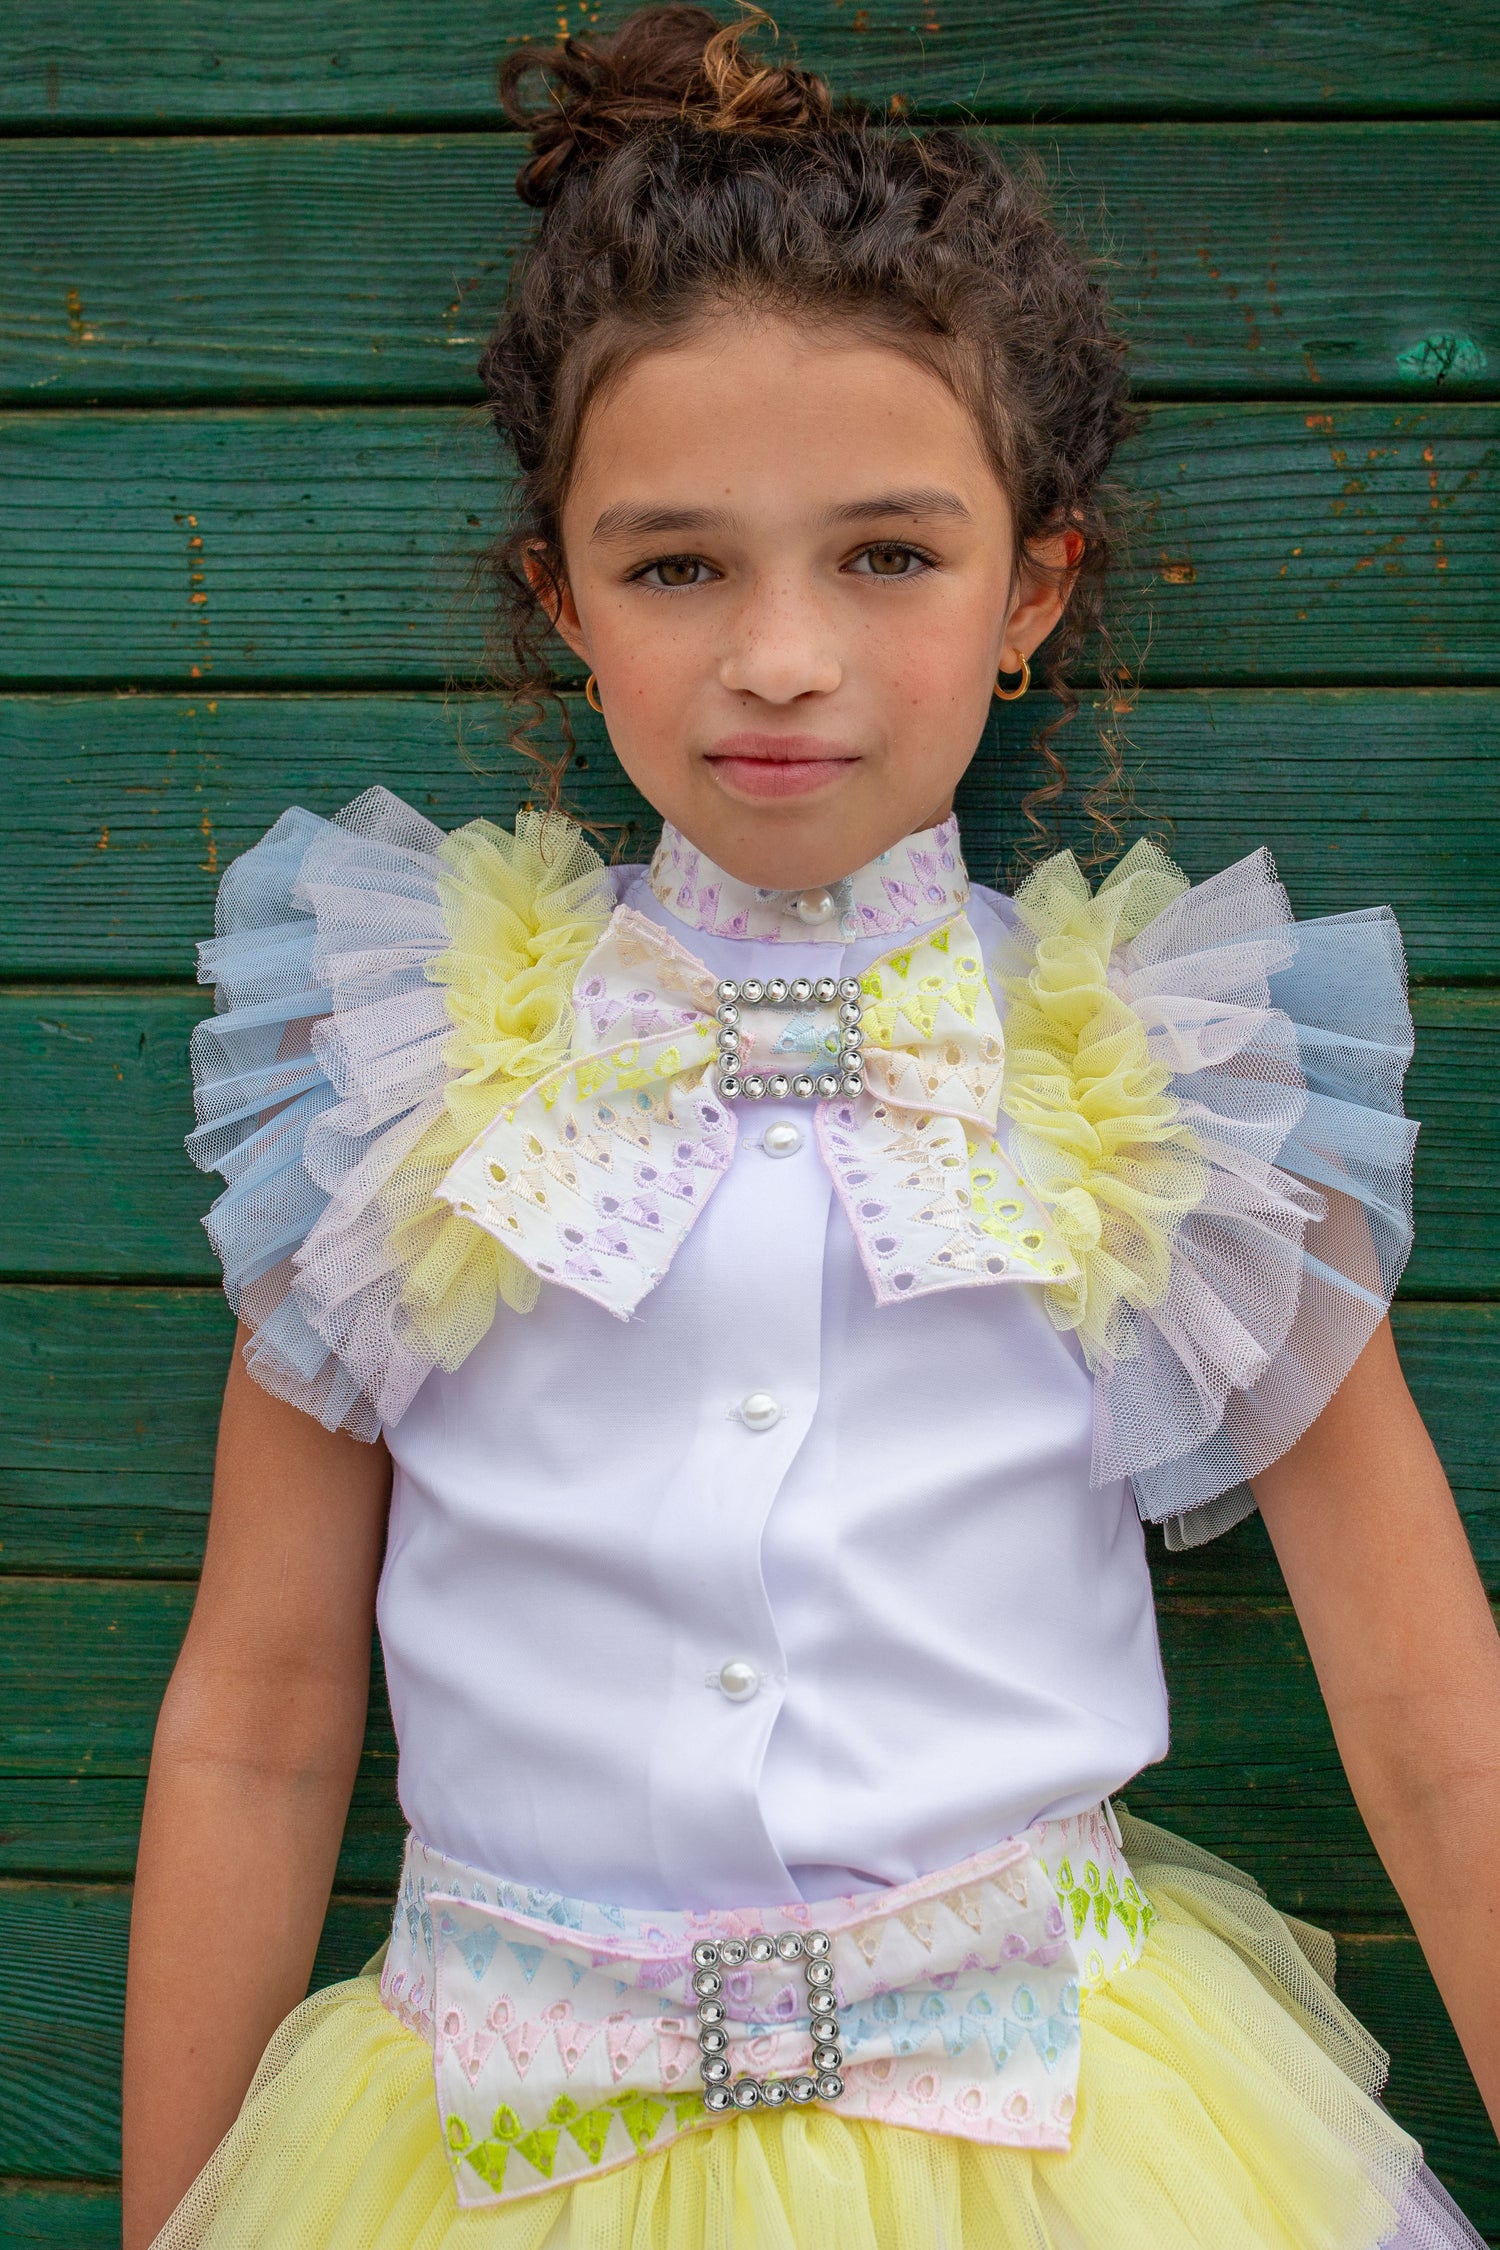 NAXOS Iris Pastel Tulle Girls Skirt Set - 7358